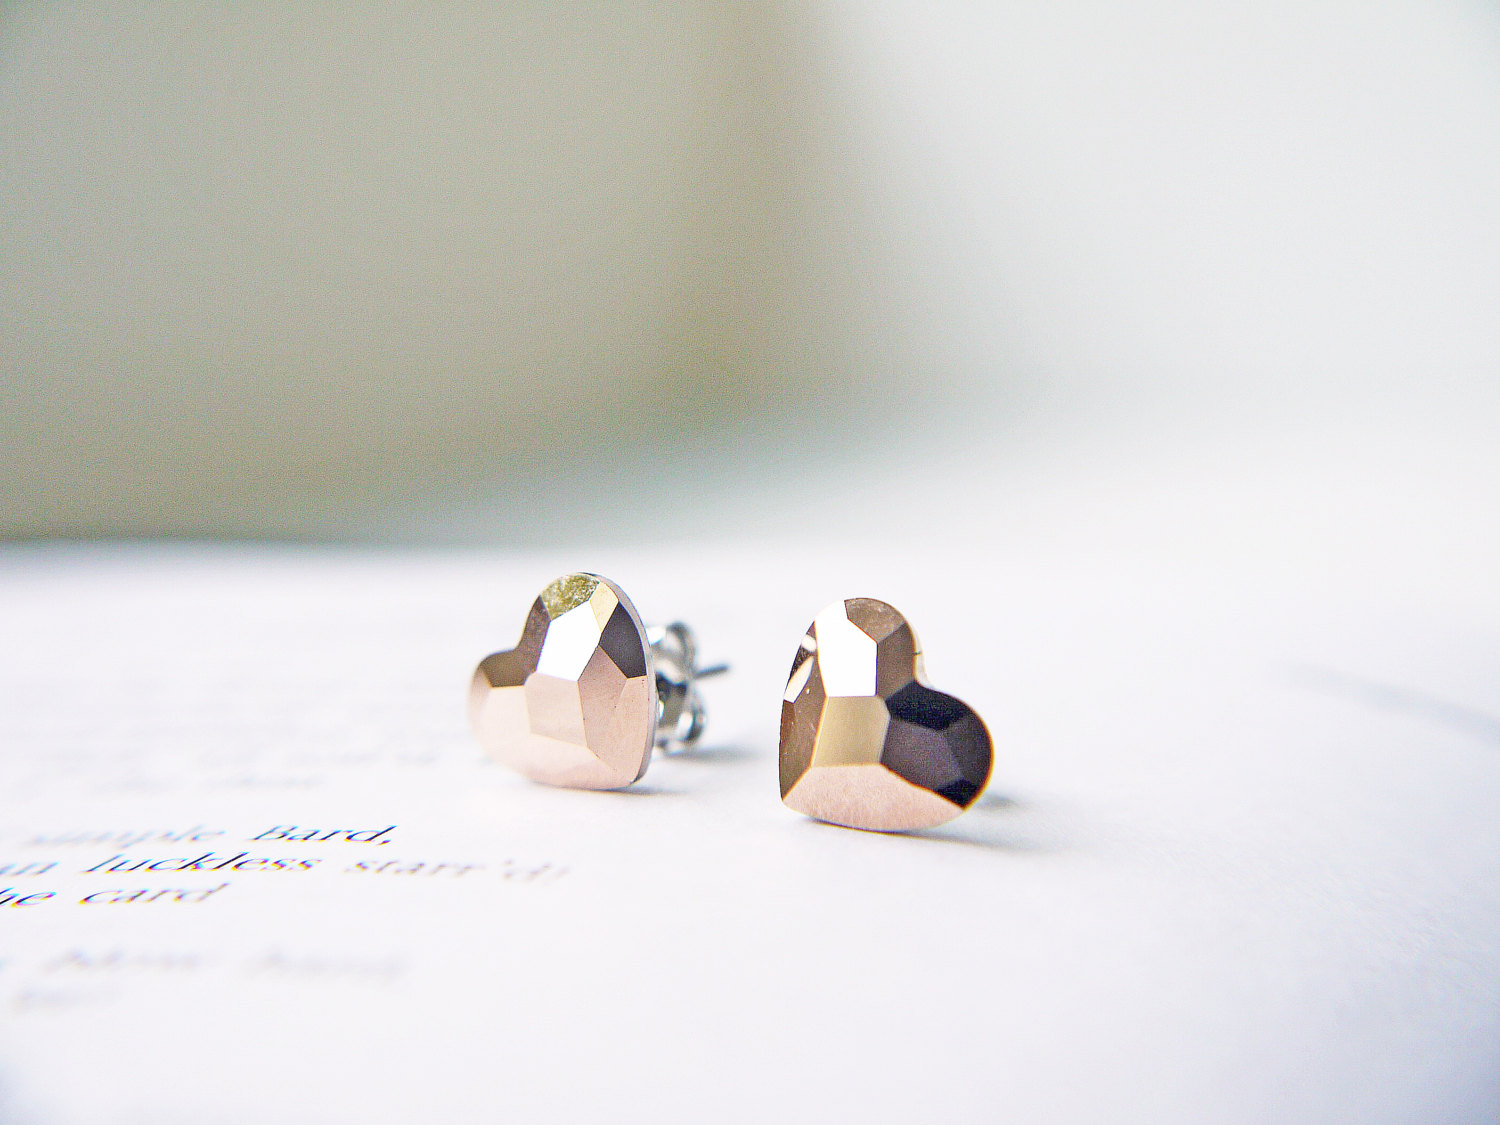 tiny heart earrings by kaorikaori | via emmalinebride.com